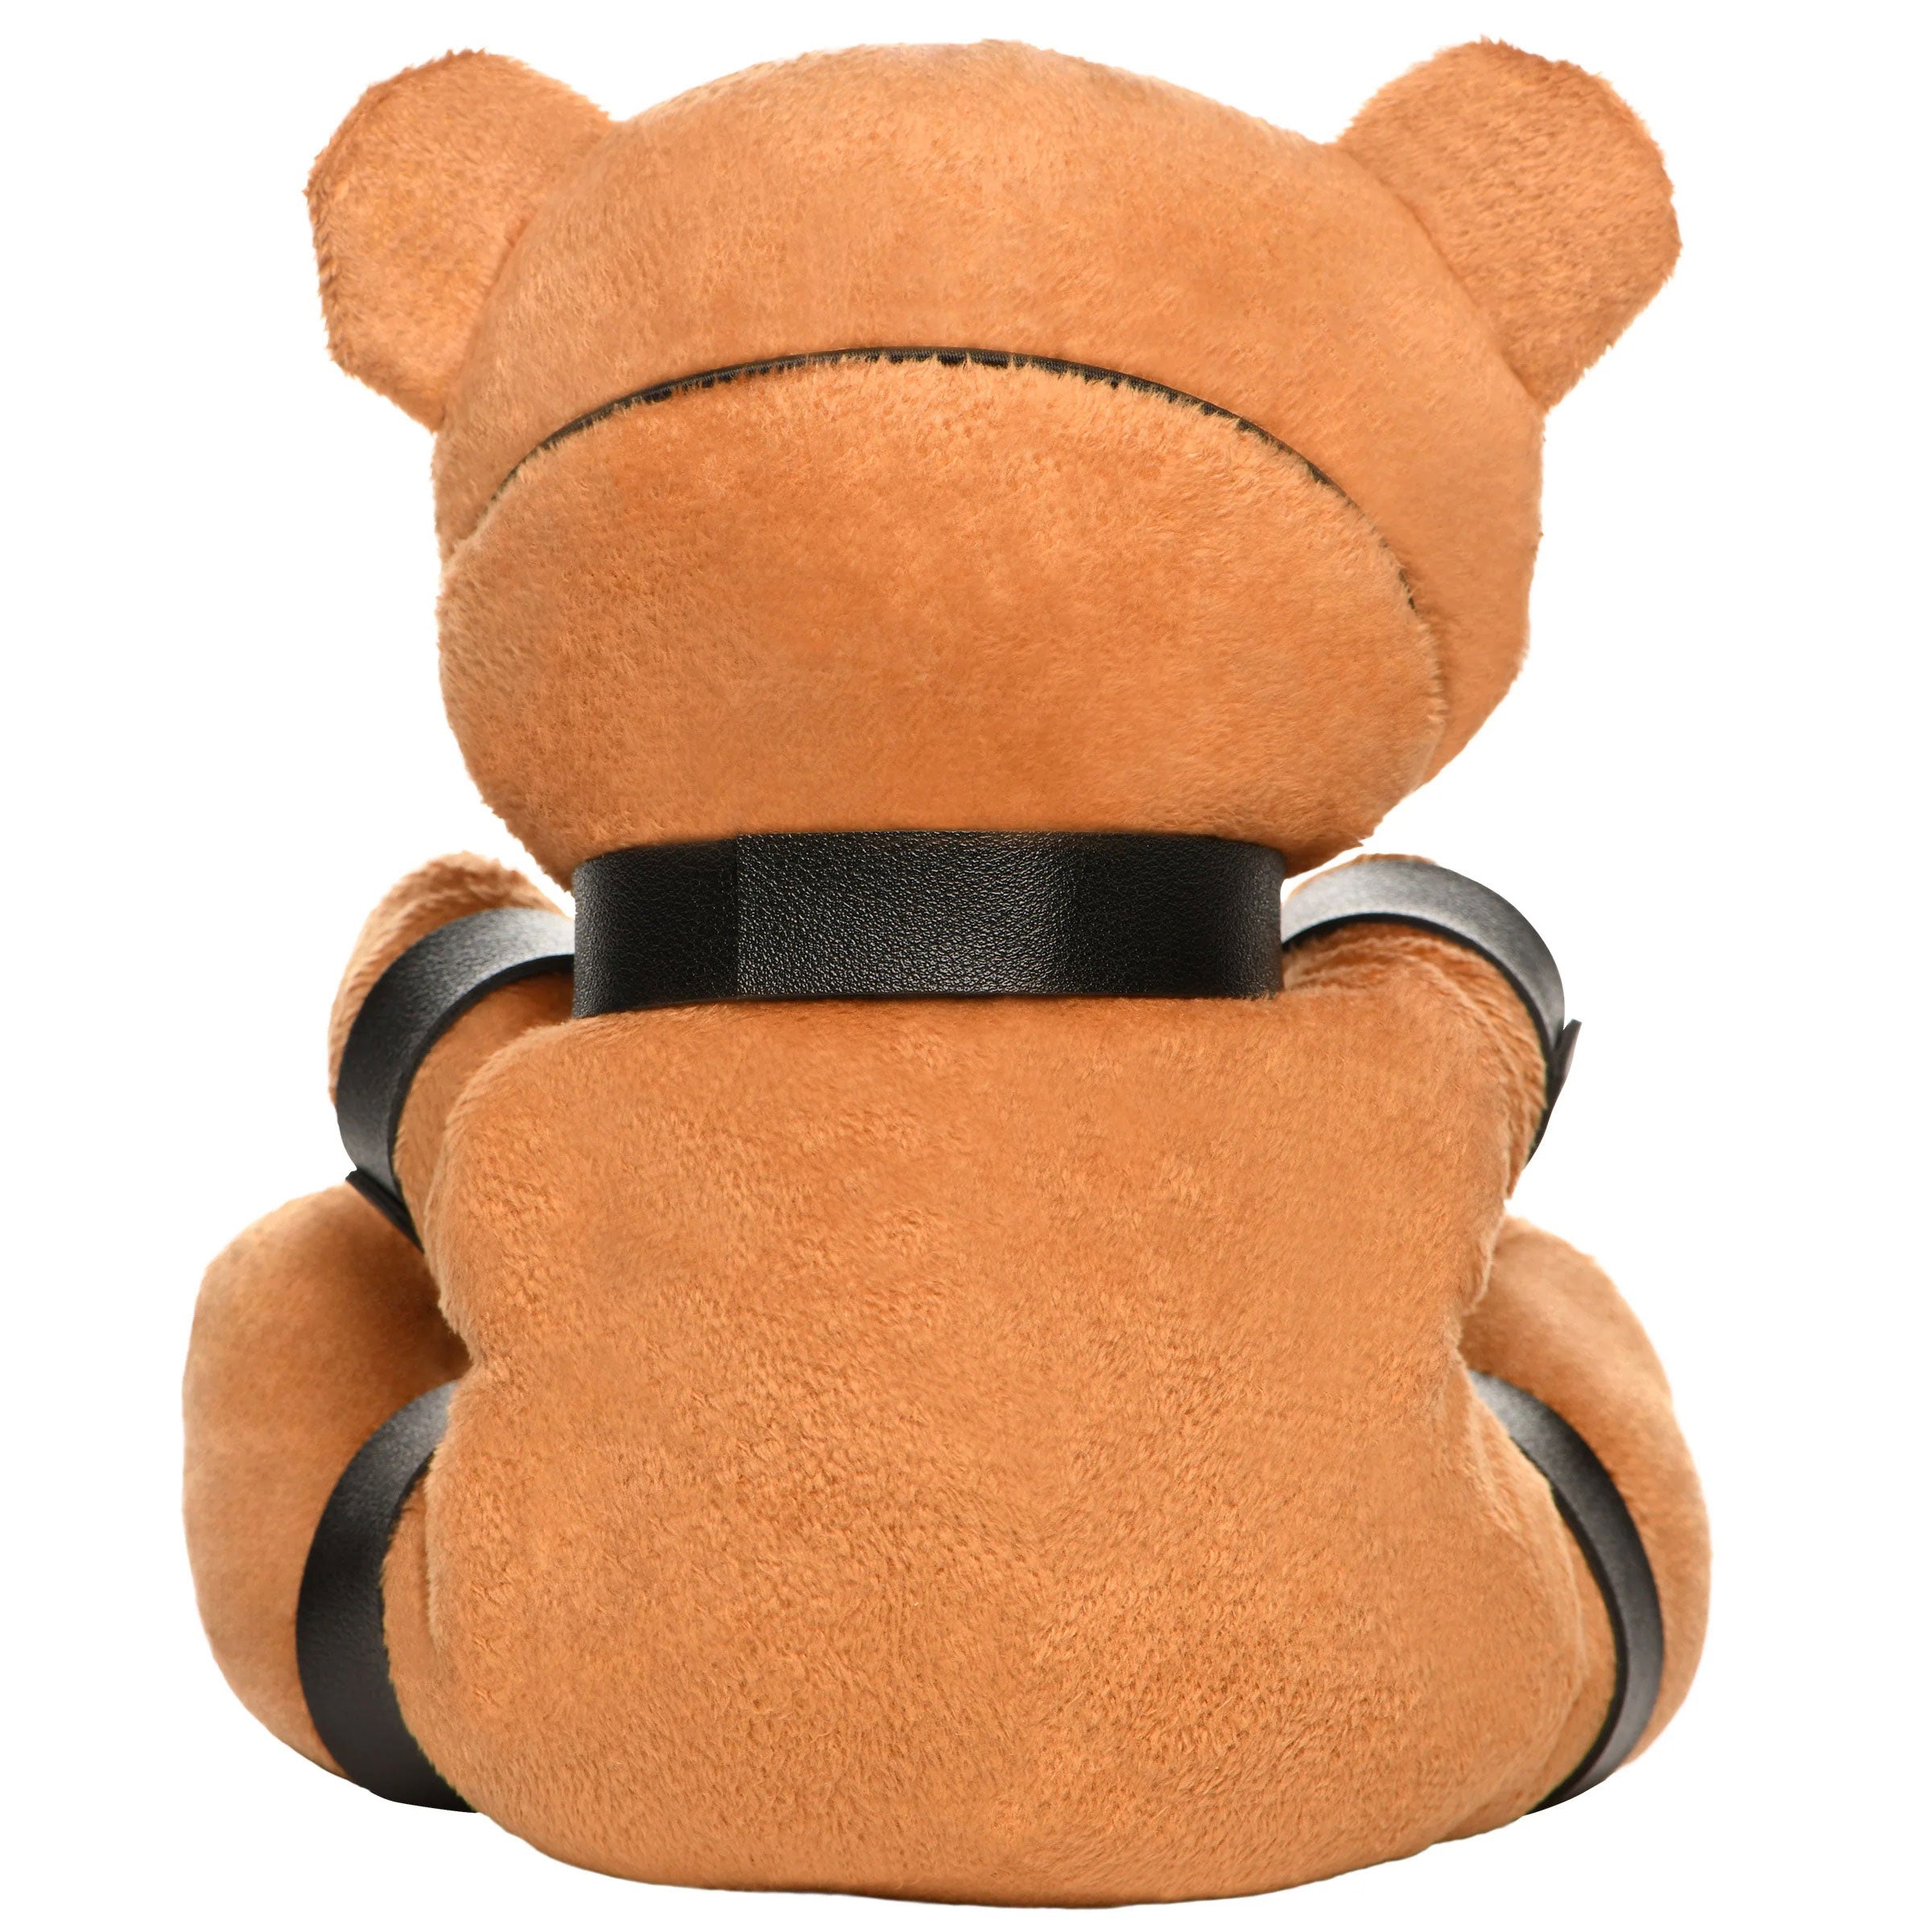 Gagged Teddy Bear Plush-4